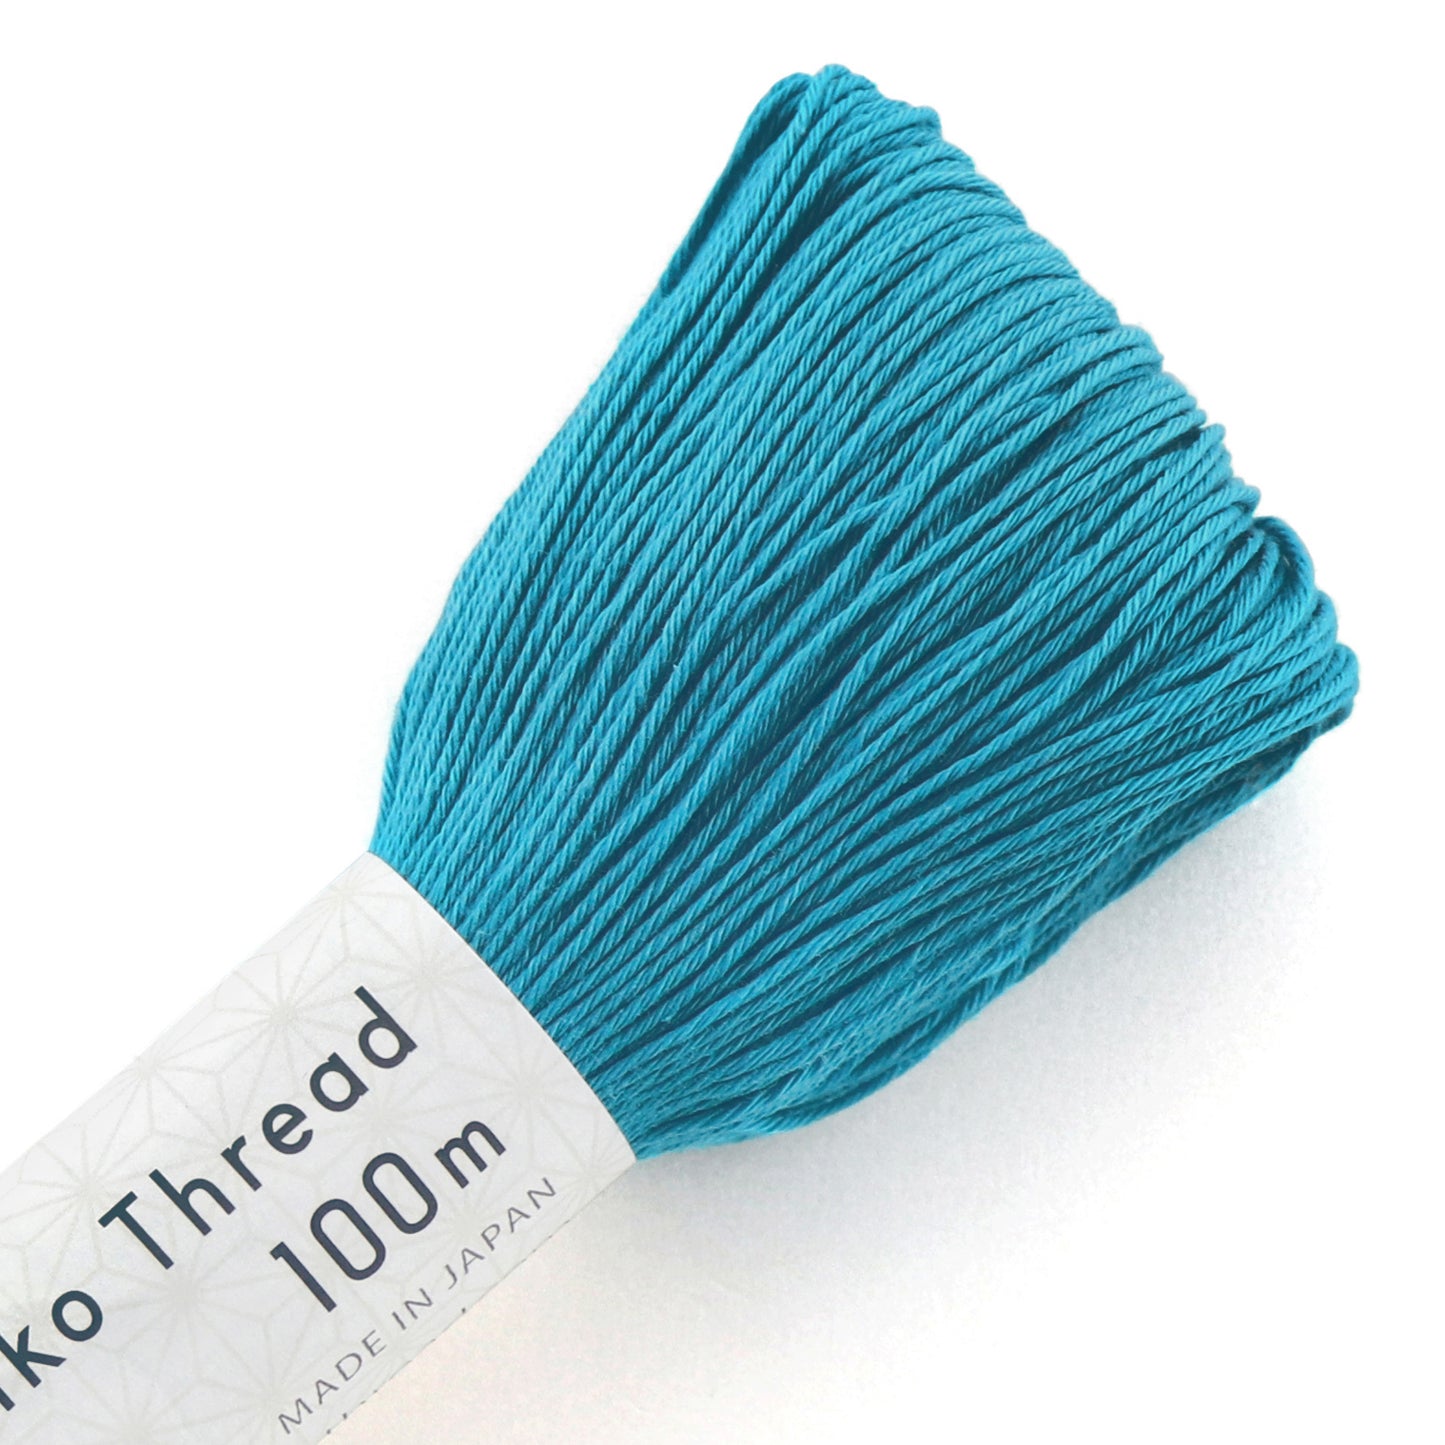 Olympus #112 Japanese cotton Sashiko thread TURQUOISE 100 meter skein